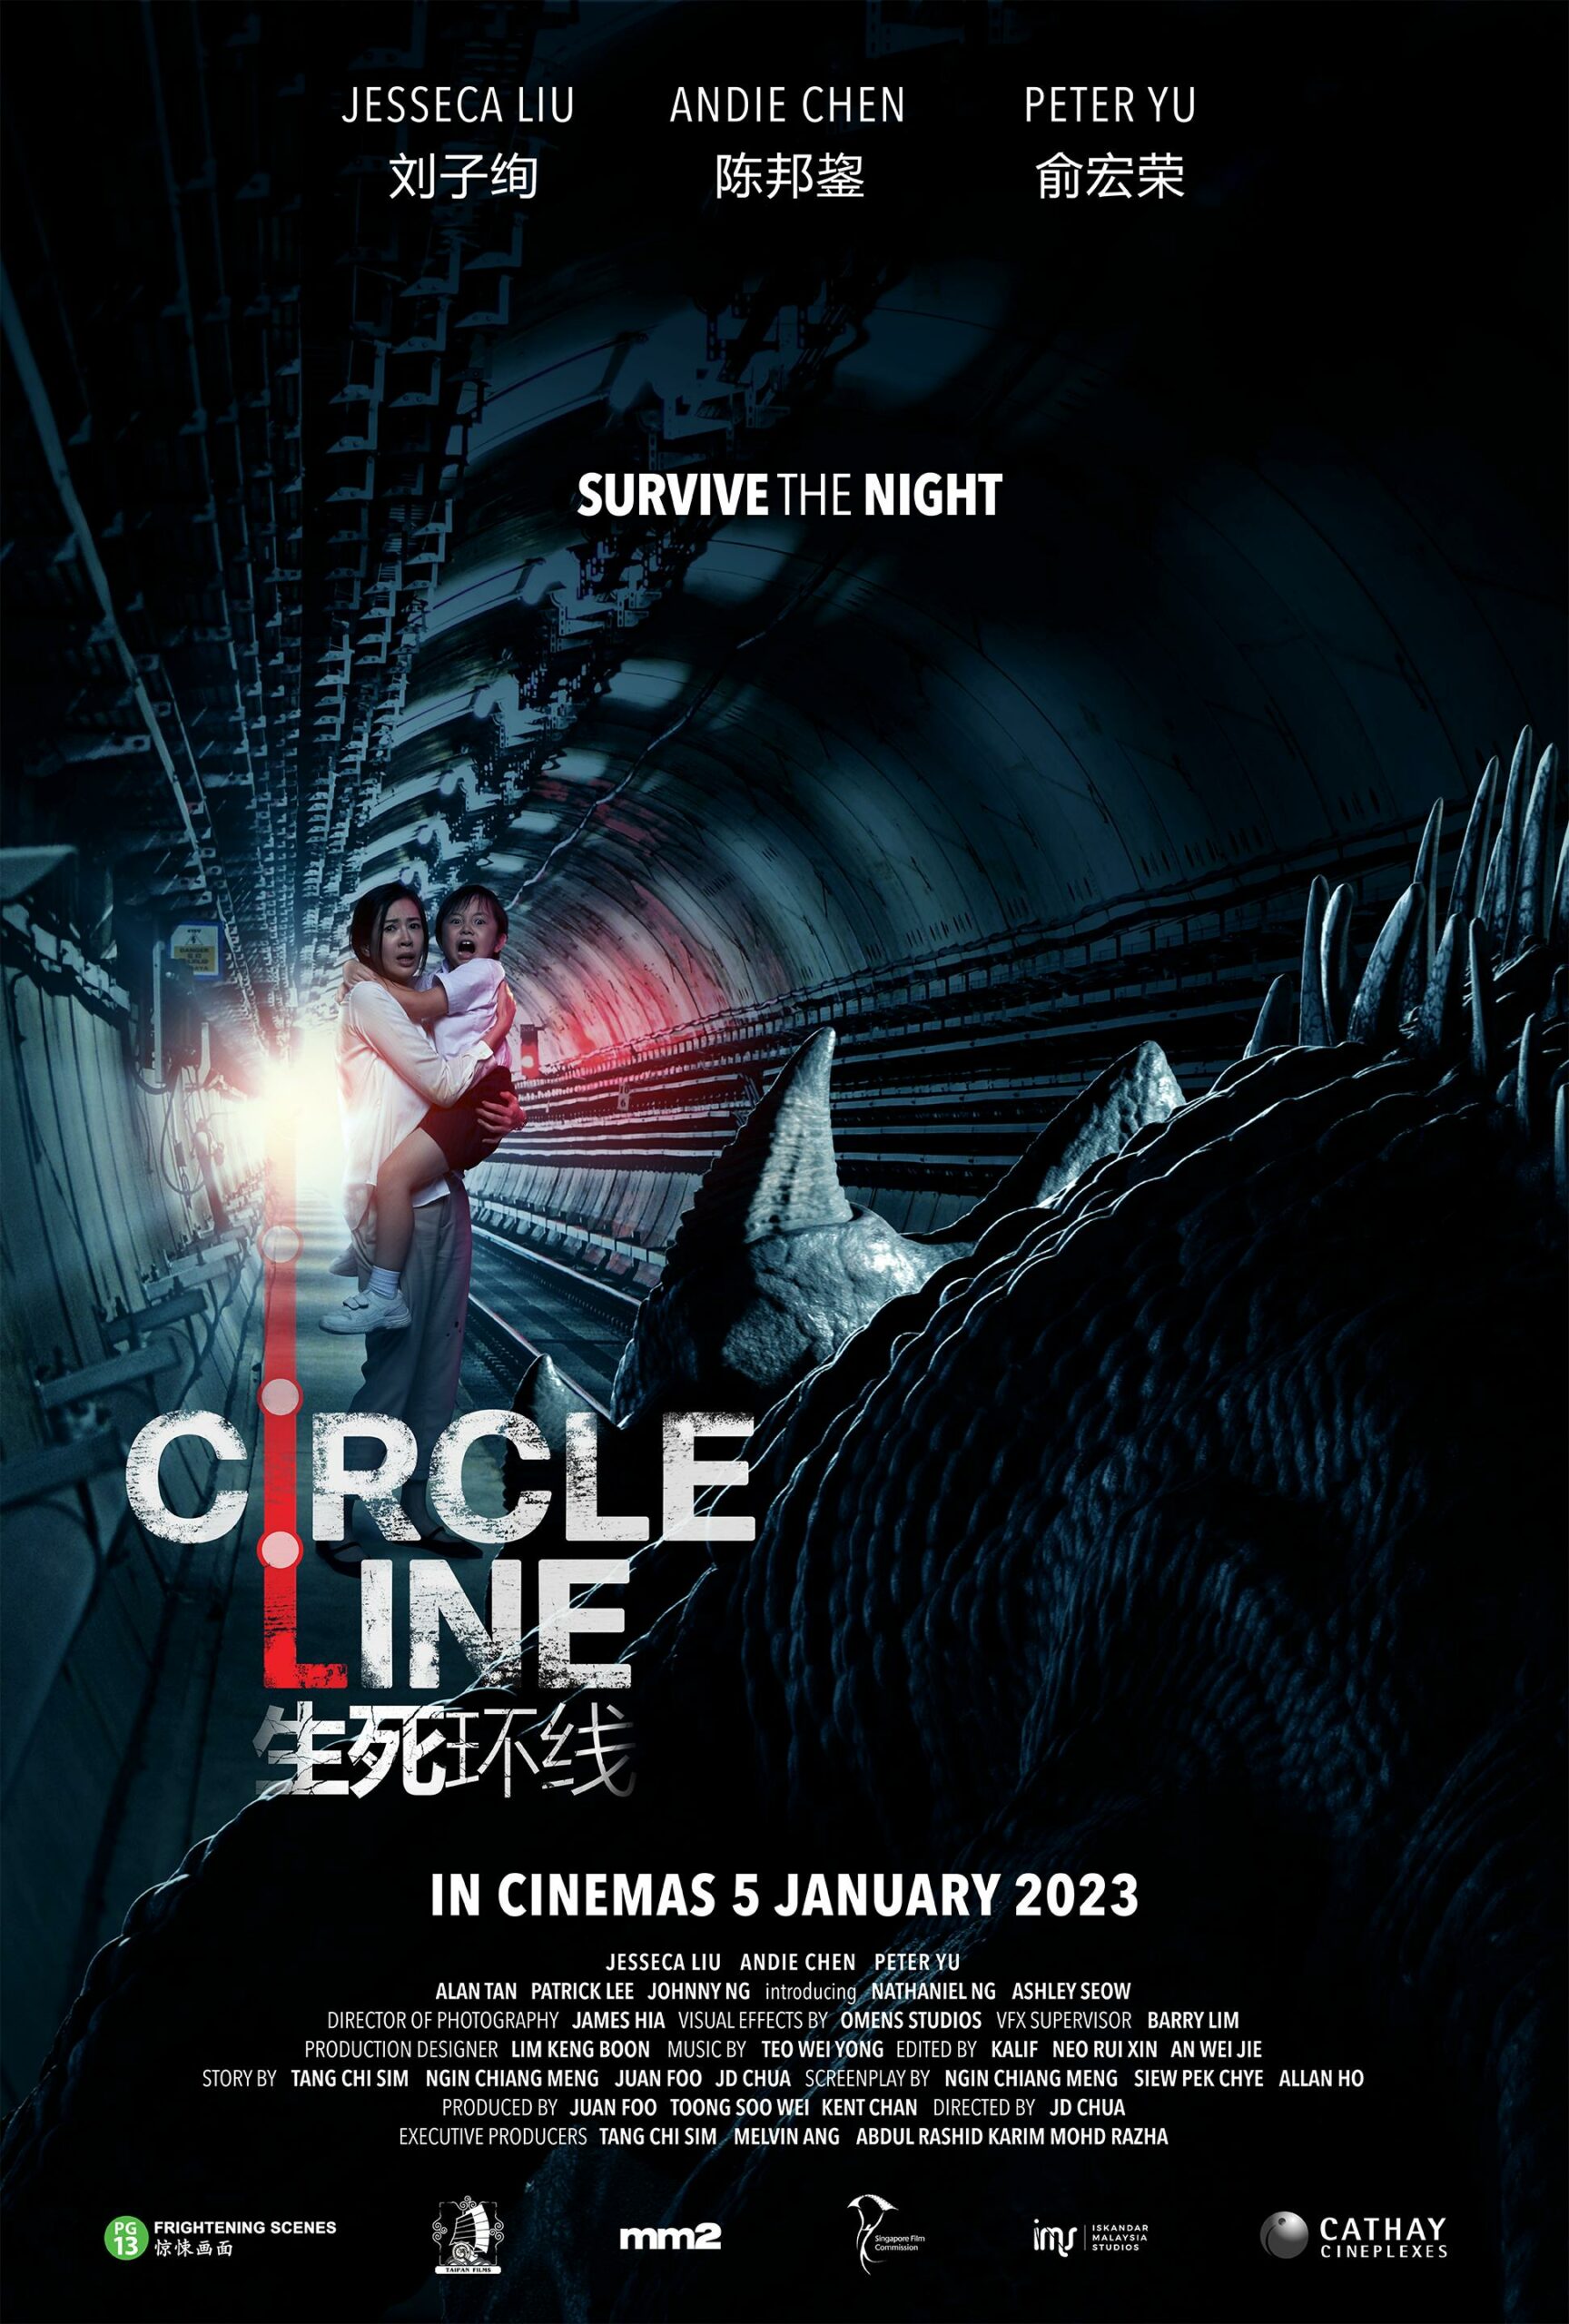 ดูหนังออนไลน์ฟรี ดูหนังออนไลน์ใหม่ CIRCLE LINE 2023 movie678